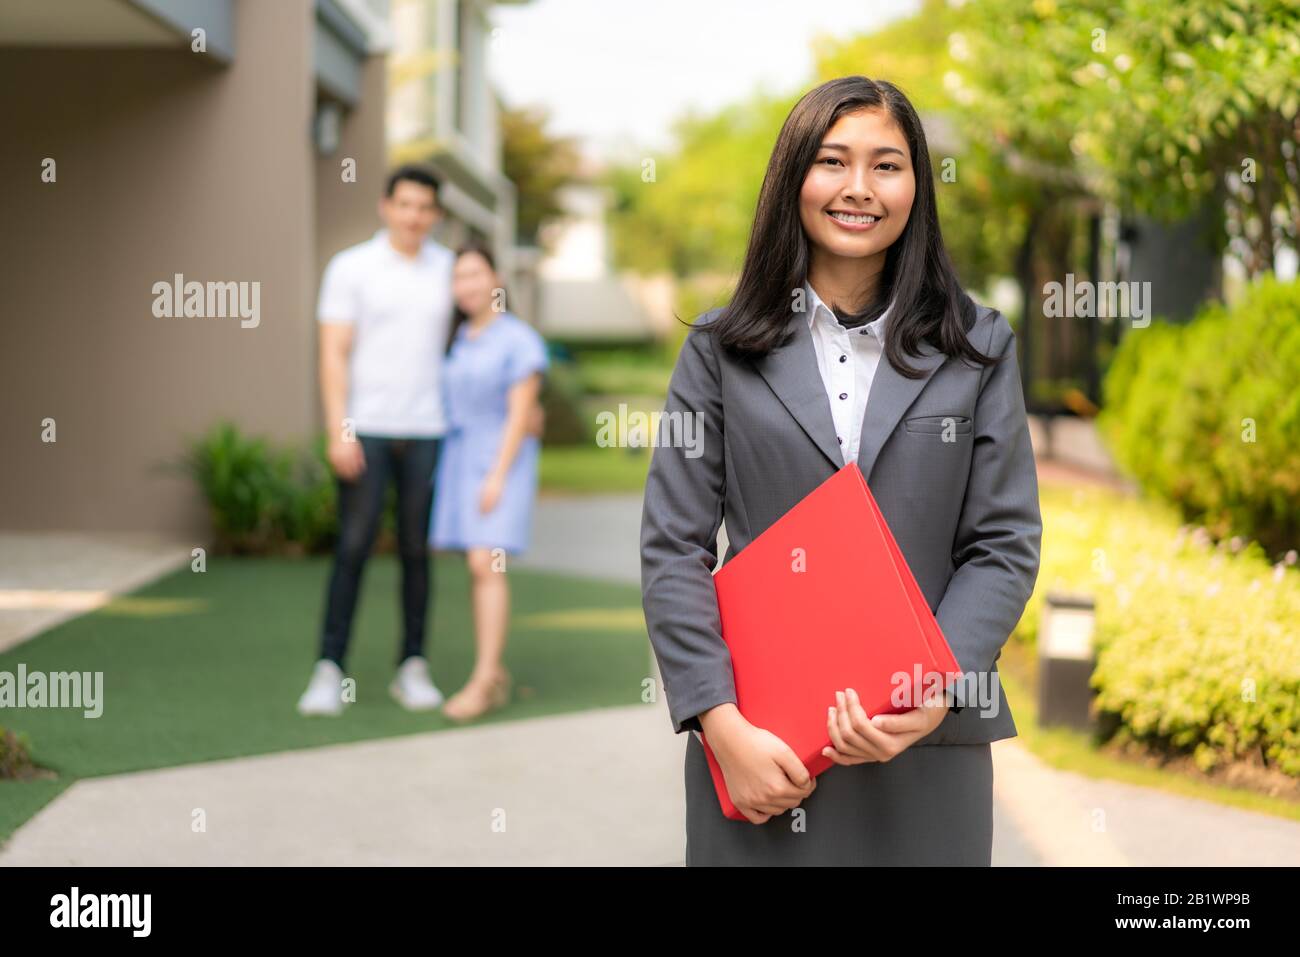 Asian fiducioso donna agente immobiliare o agente immobiliare in tuta tenendo file rosso e sorriso con giovane coppia venditori casa dietro di fronte a casa. Portrai Foto Stock